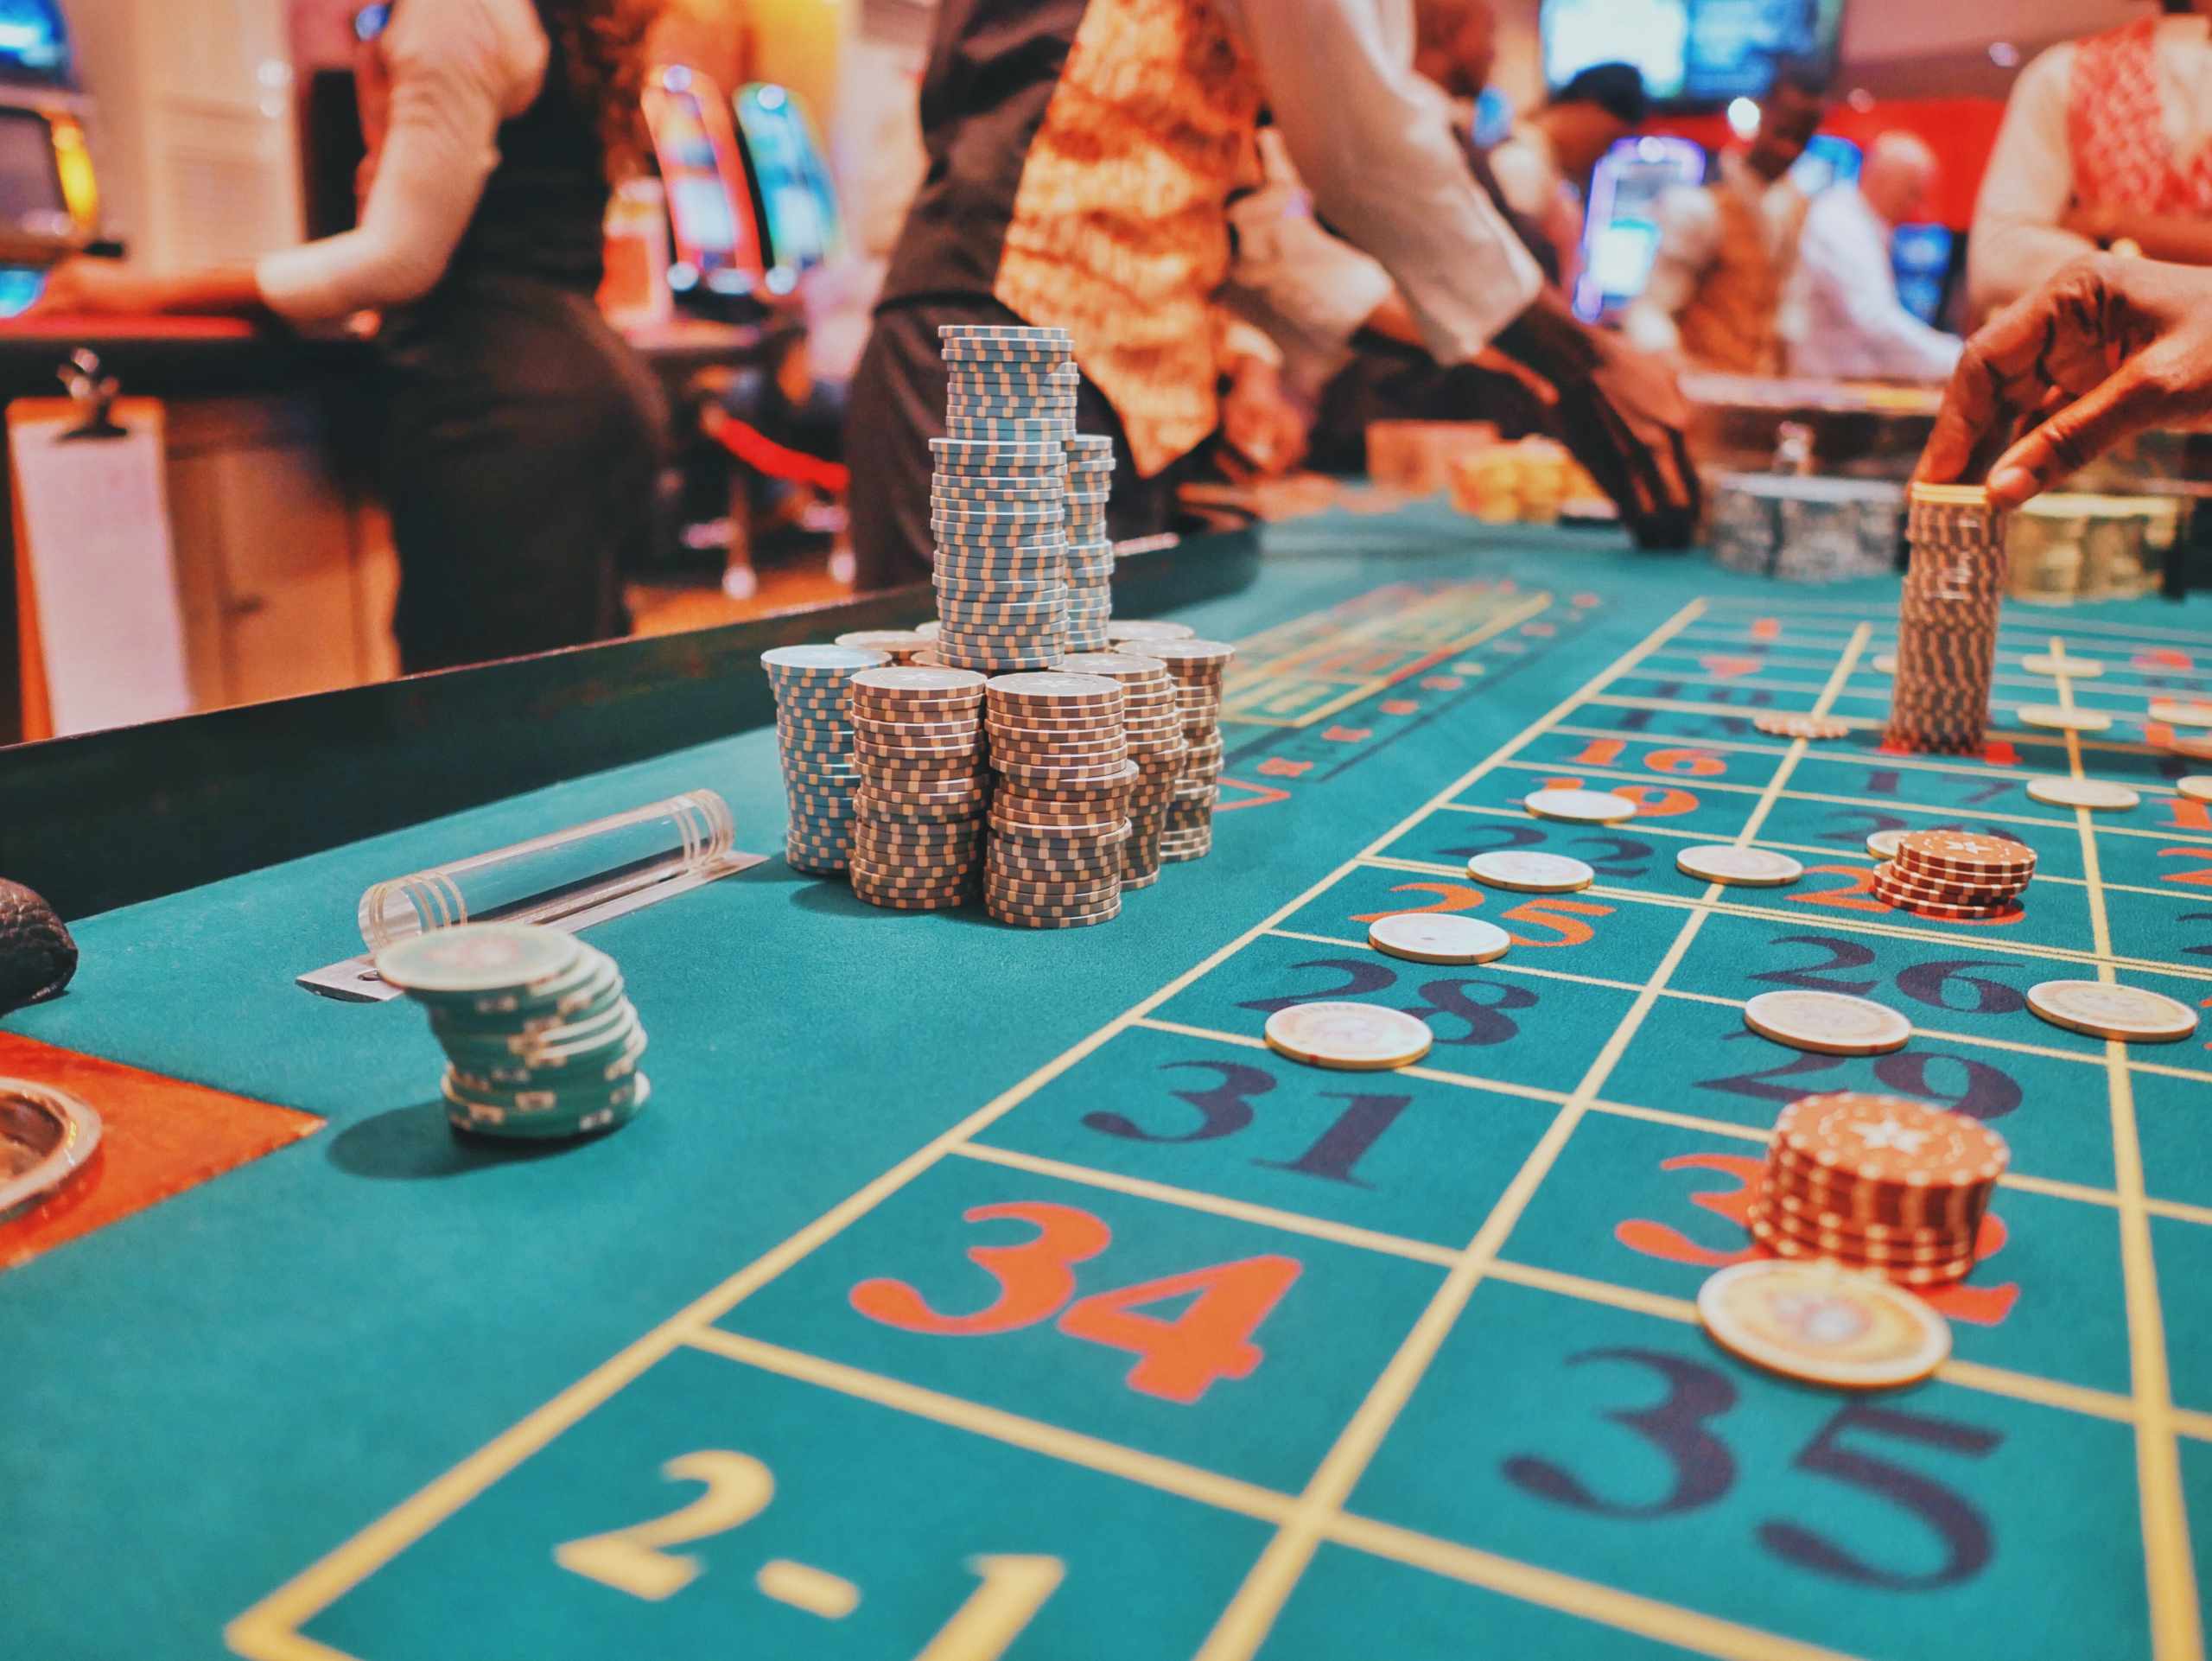 bonuses at online casinos